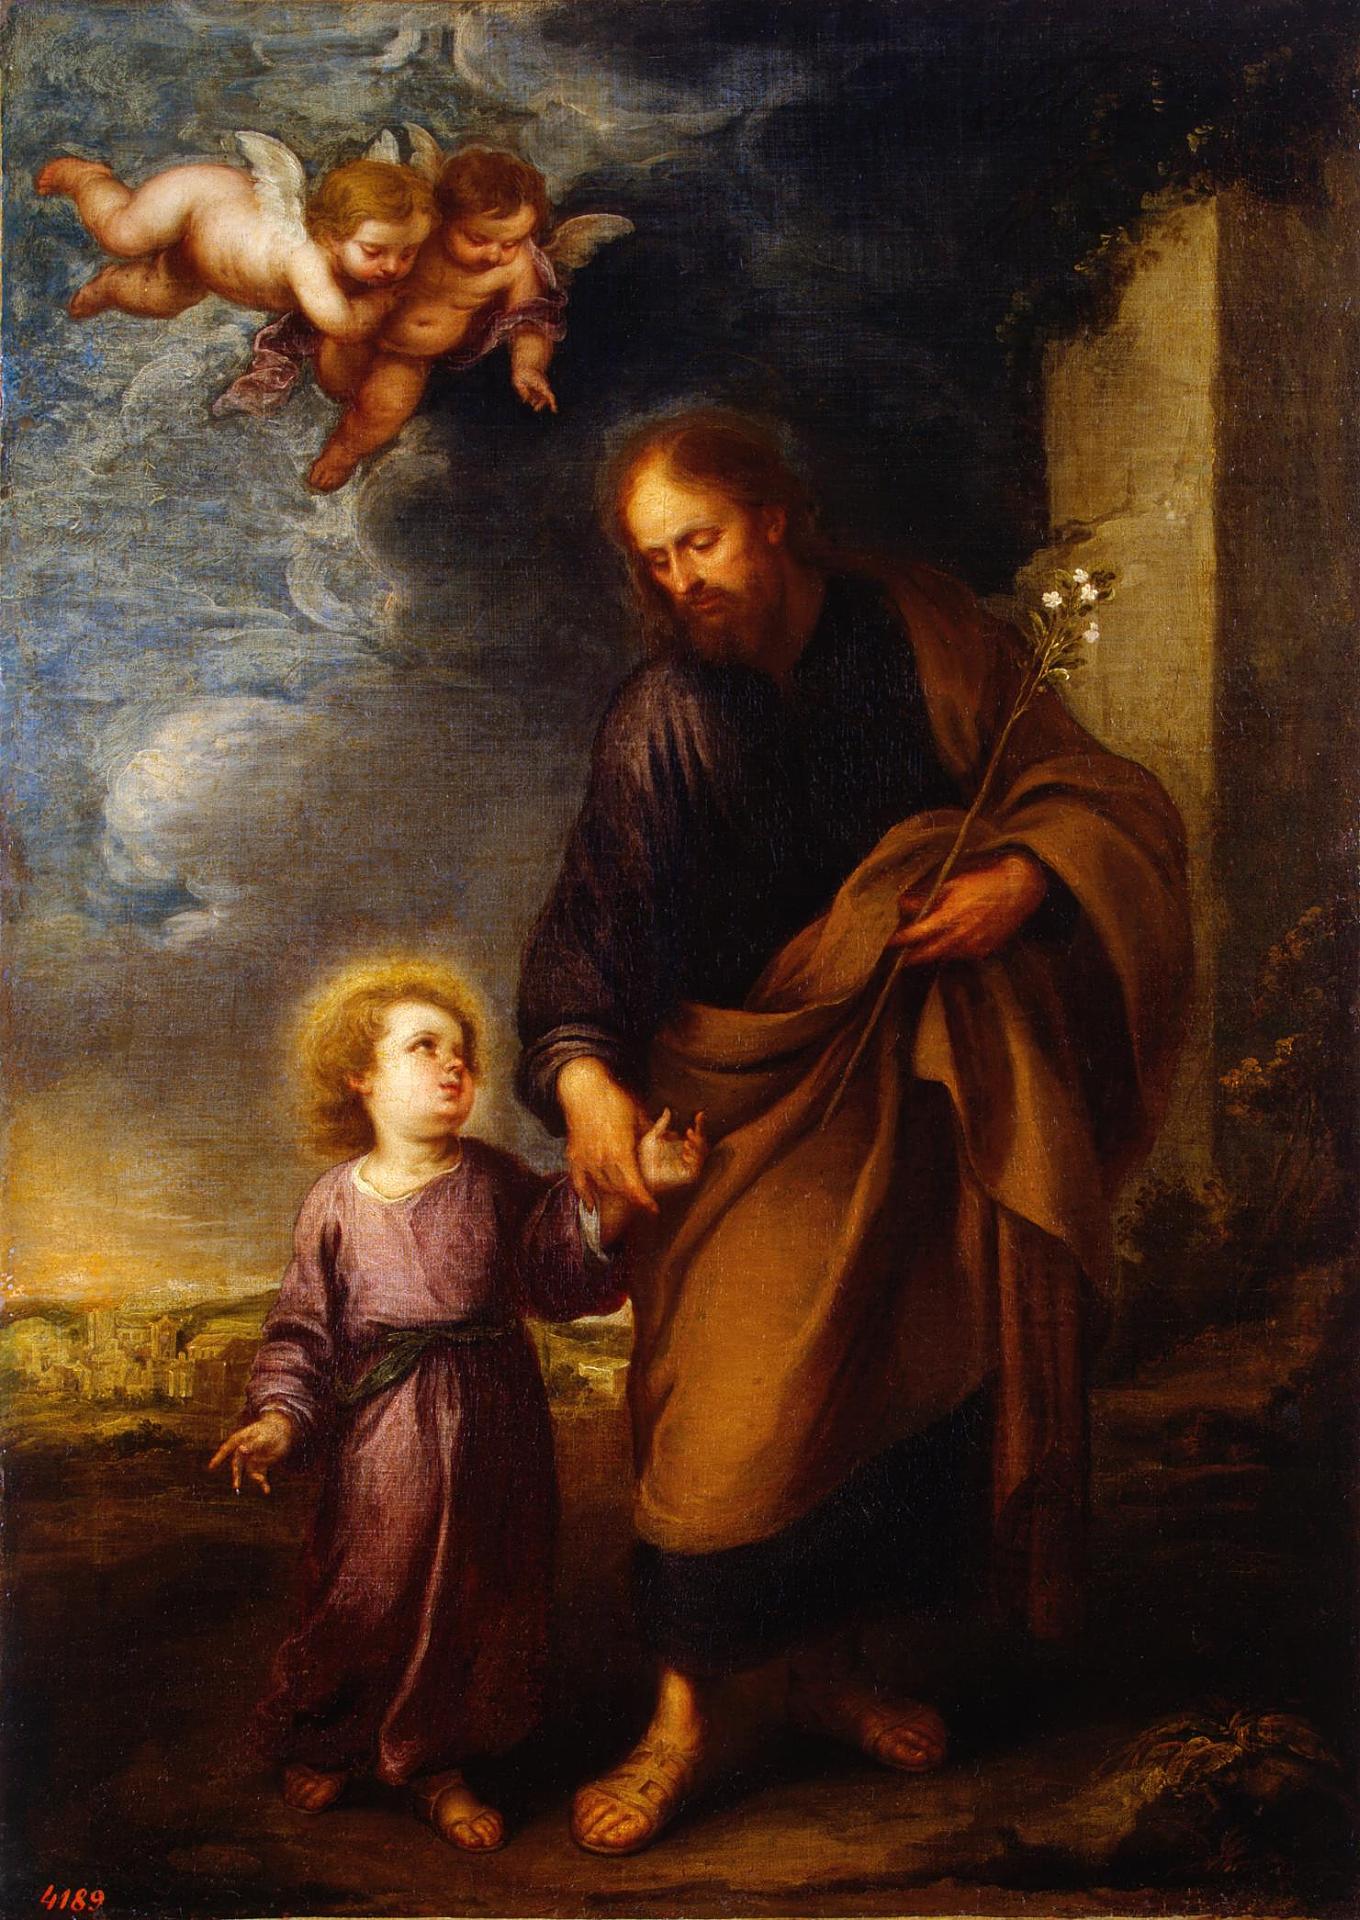 Бартоломе Эстебан Мурильо. "Святой Иосиф, ведущий за руку Младенца Христа". 1670-е. Эрмитаж, Санкт-Петербург.